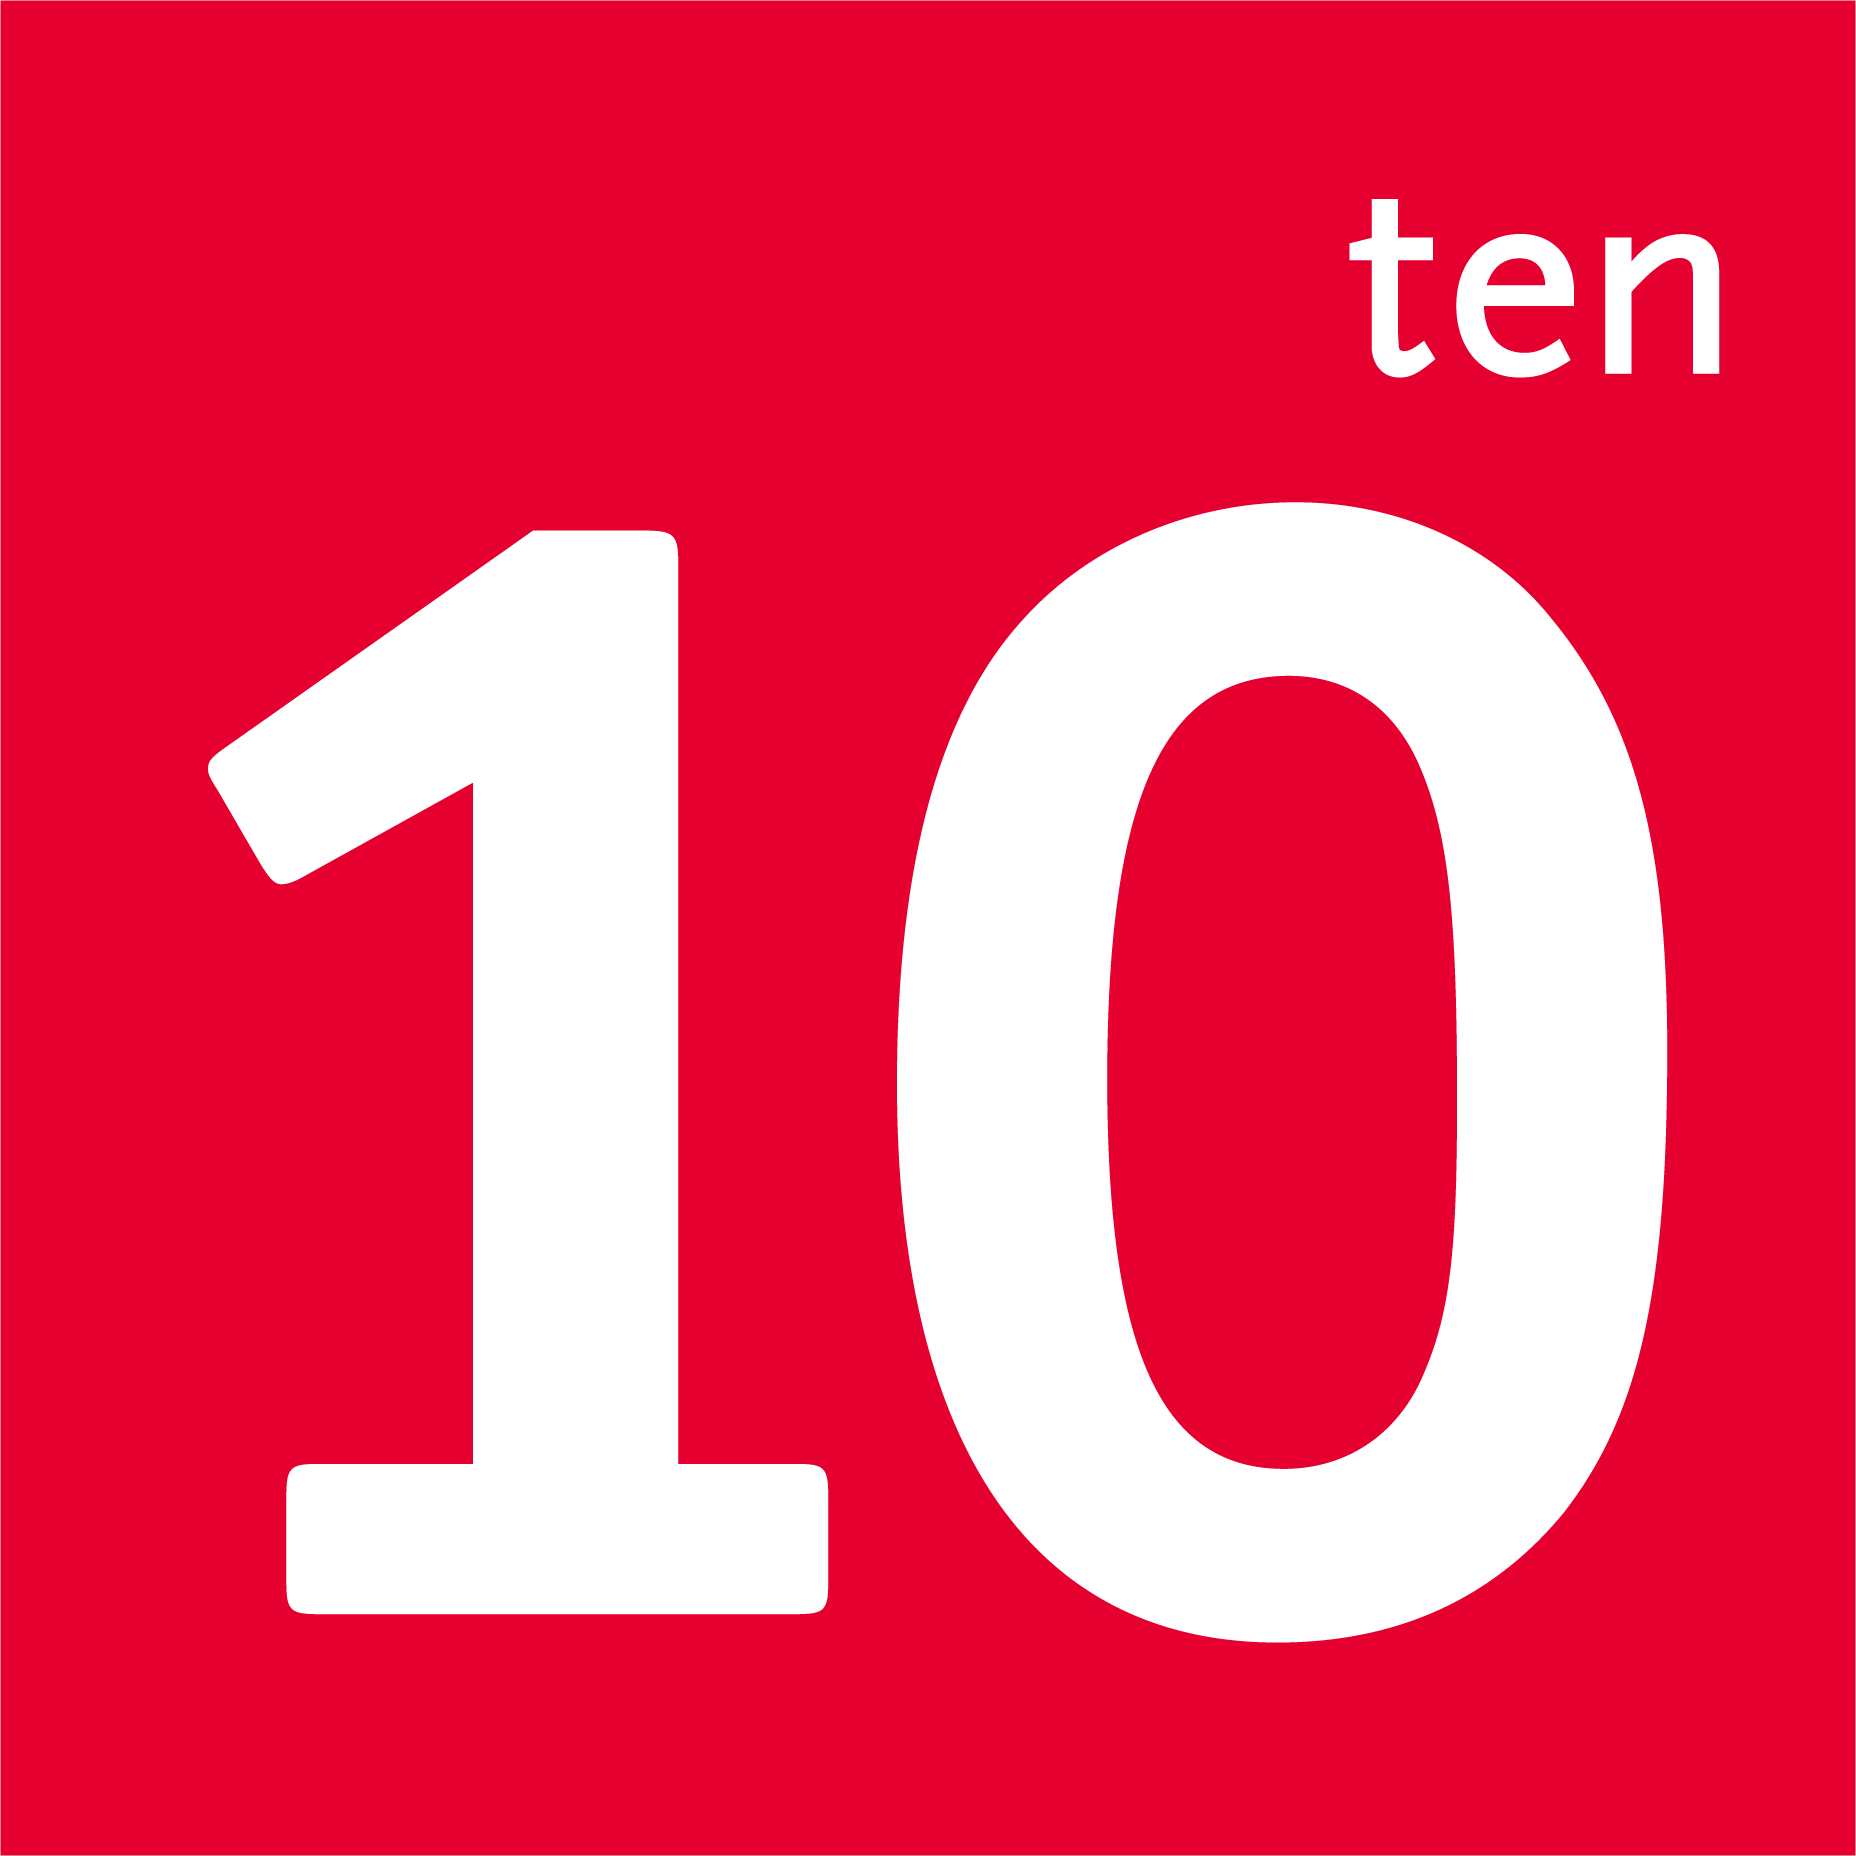 The Ten Logo